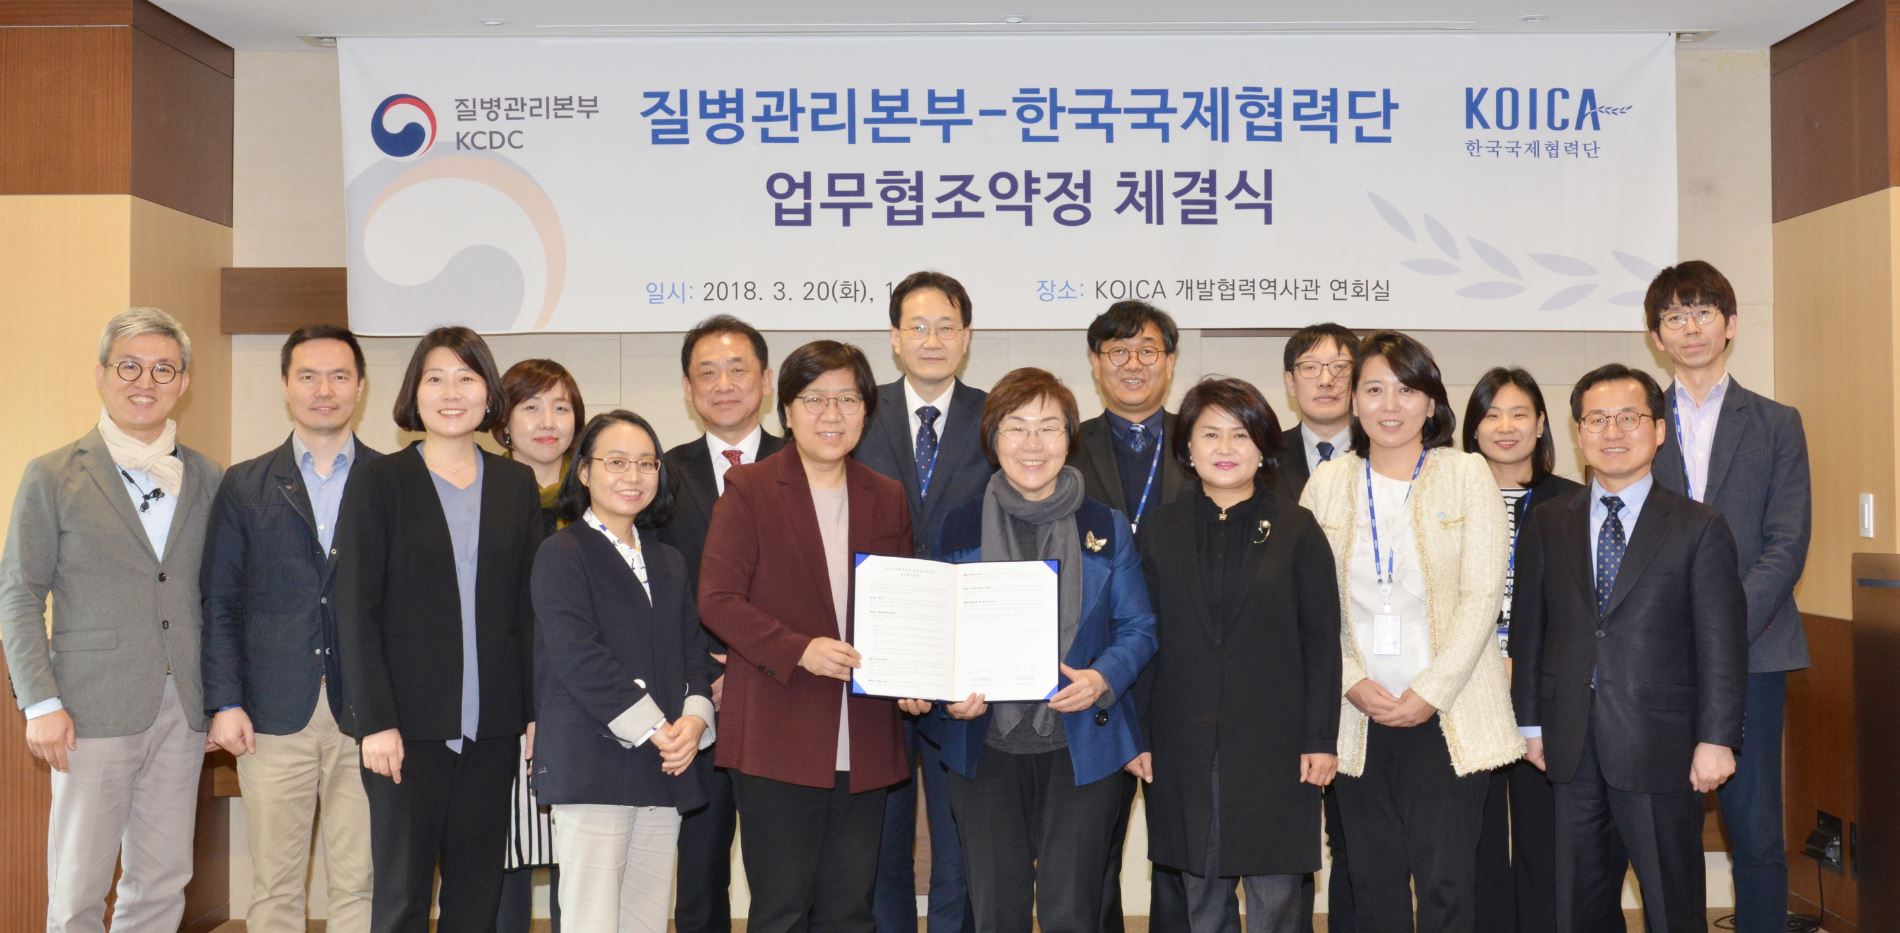 질병관리본부-한국국제협력단(KOICA) 업무협조약정 체결식 사진1